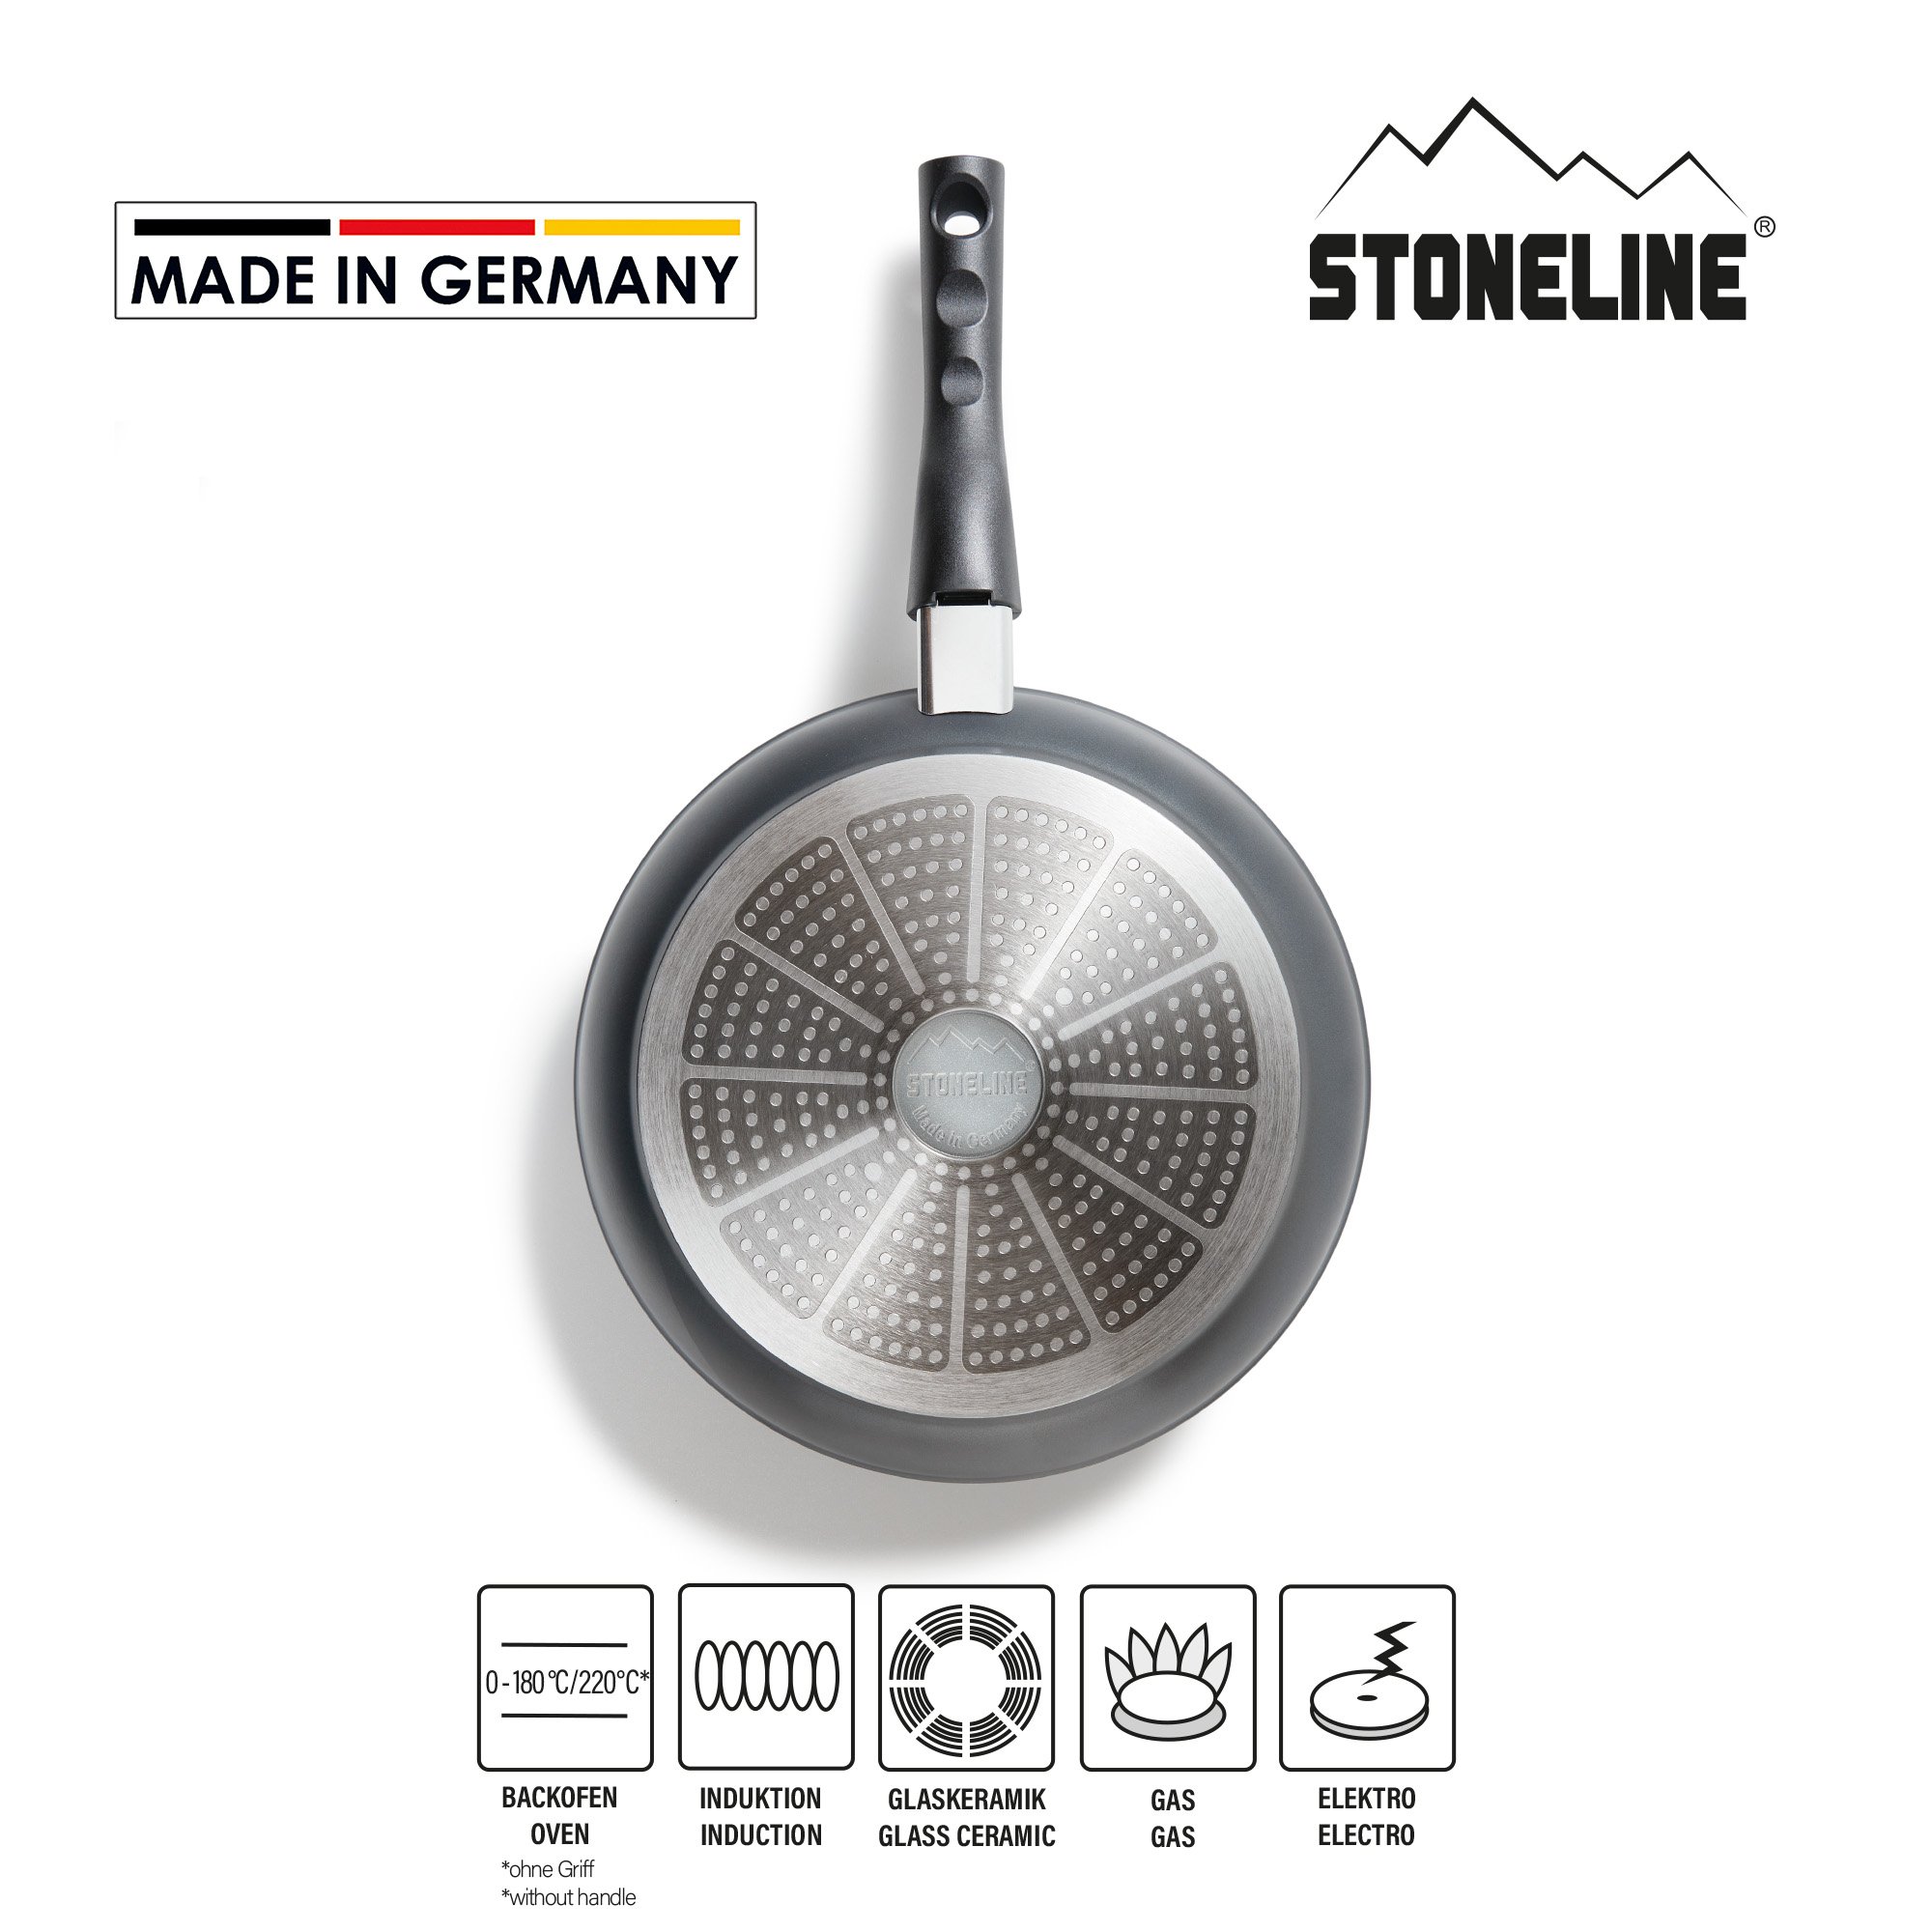 STONELINE® Sauteuse 24 cm, Poignée amovible, Antiadhésive, Made in Germany | FLEX